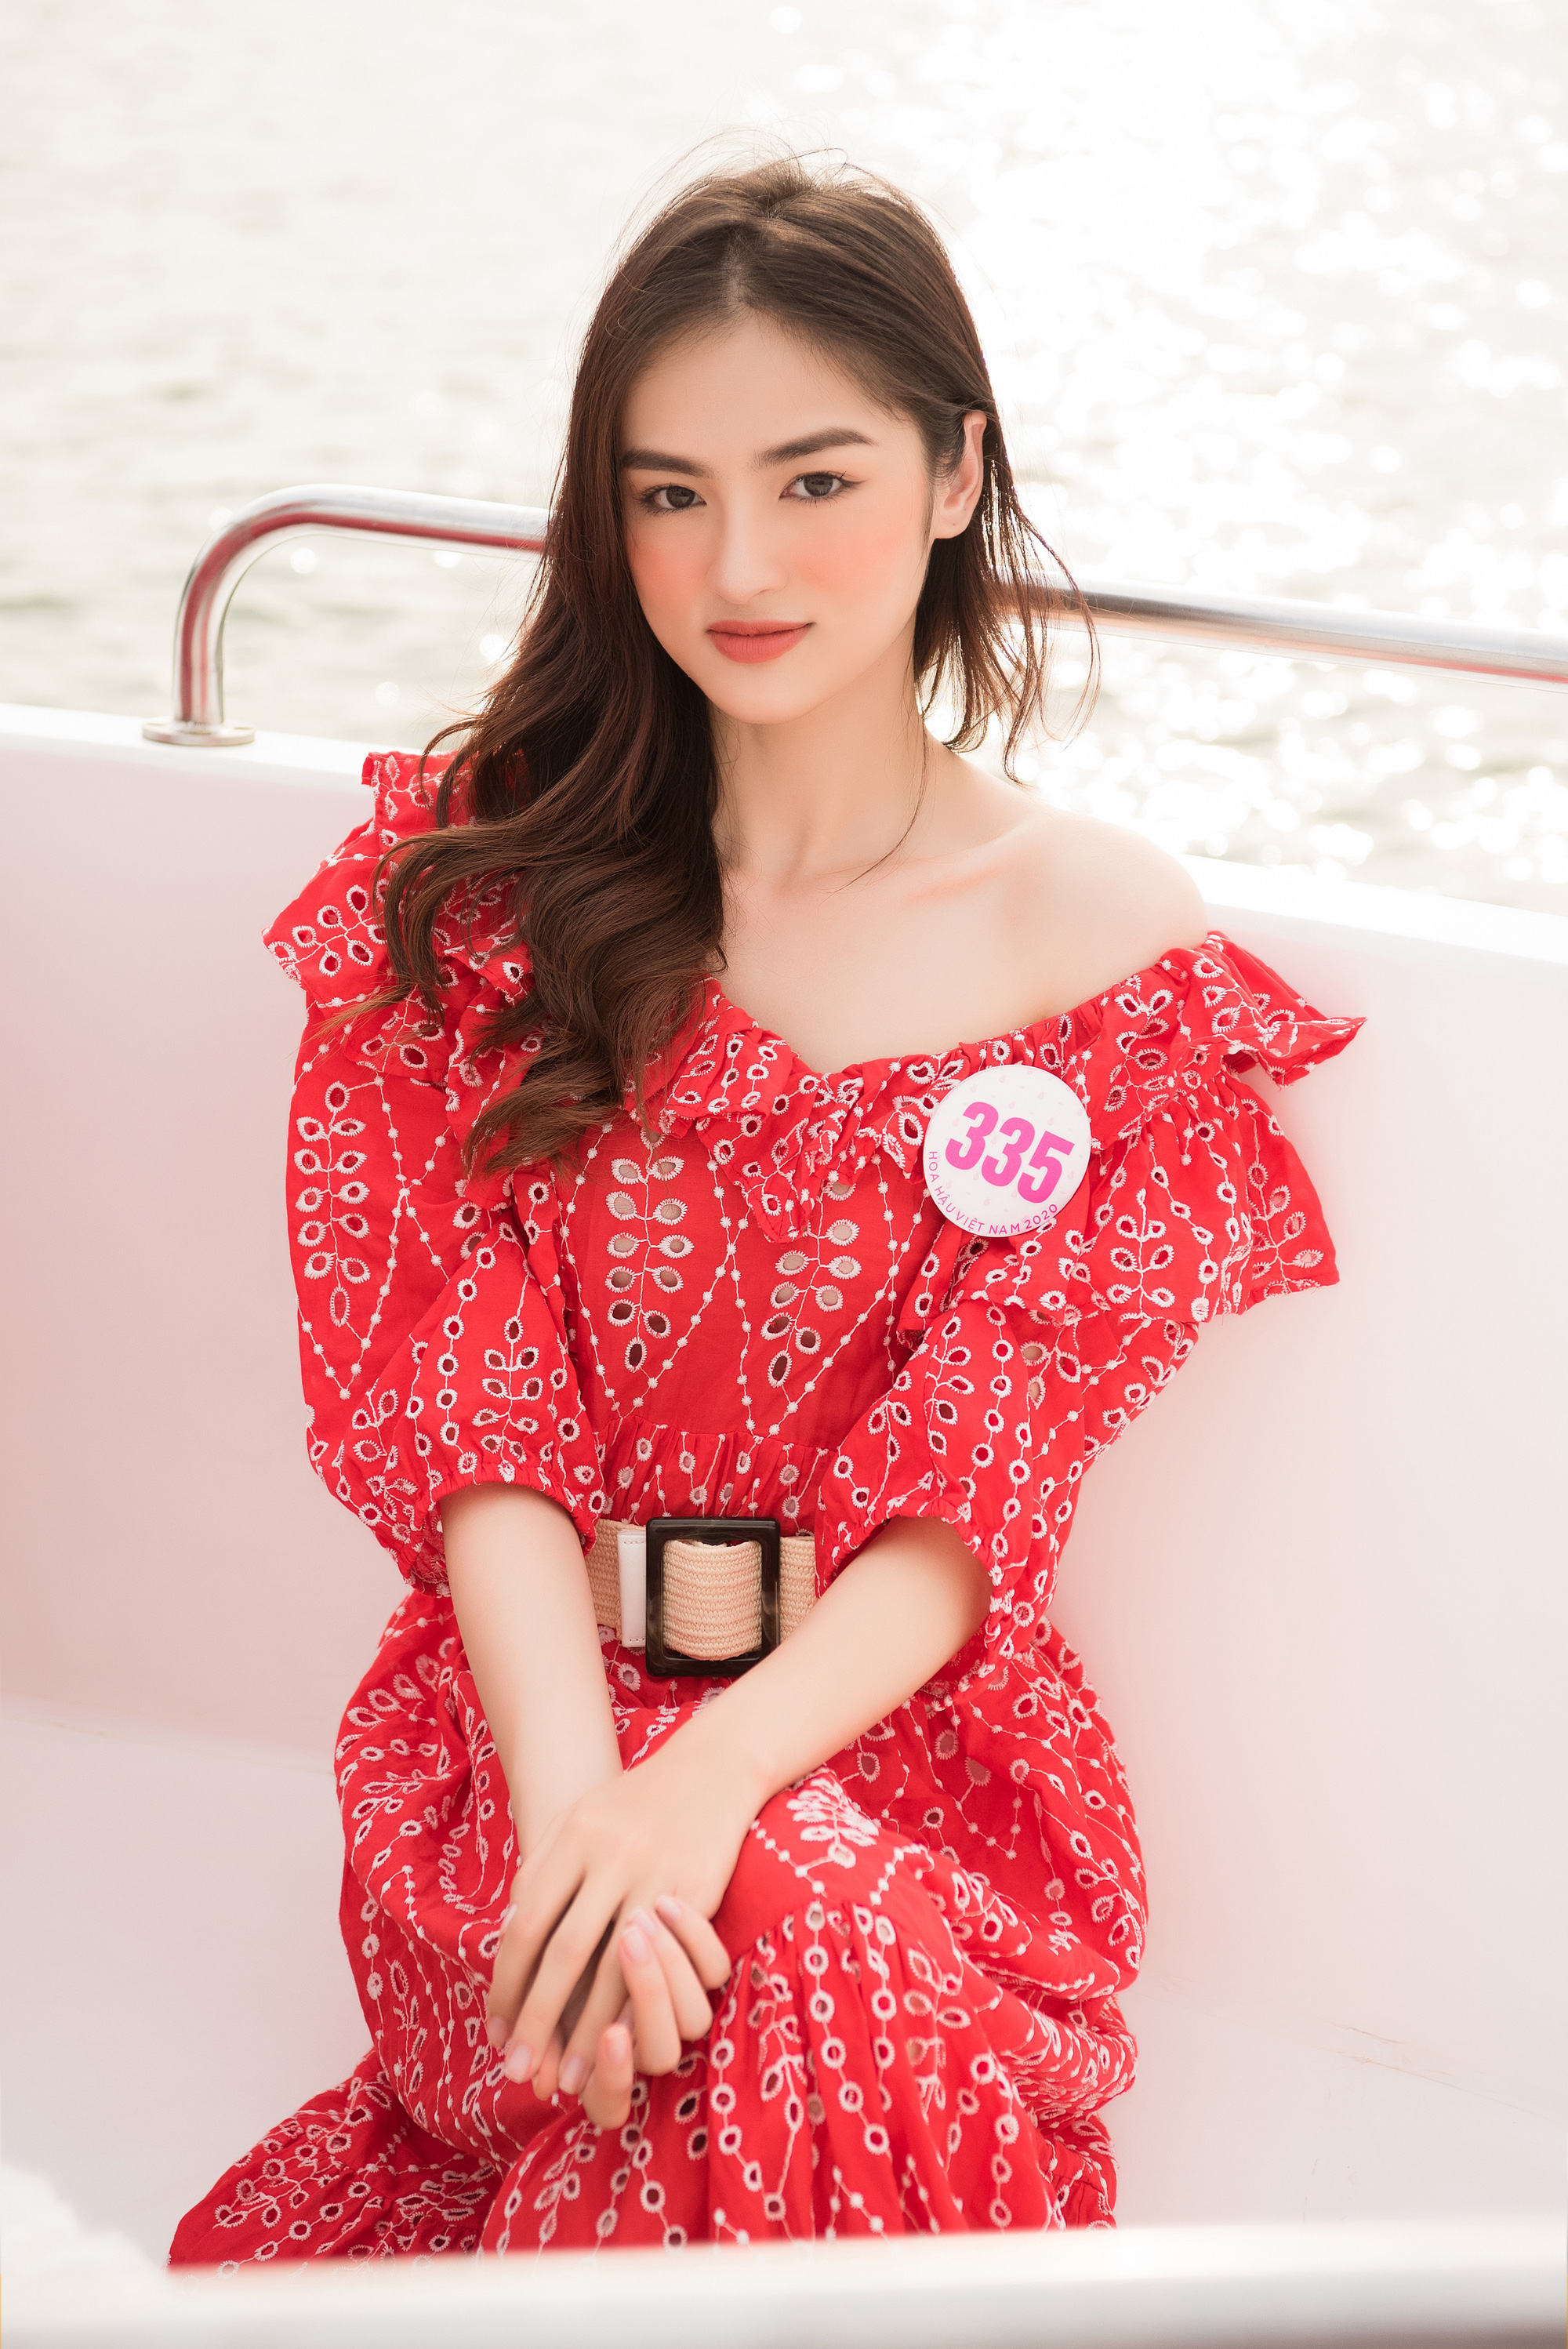 Ngây ngất vì thí sinh Hoa hậu Việt Nam 2020 mặc quyến rũ hút mắt trên du thuyền - Ảnh 3.